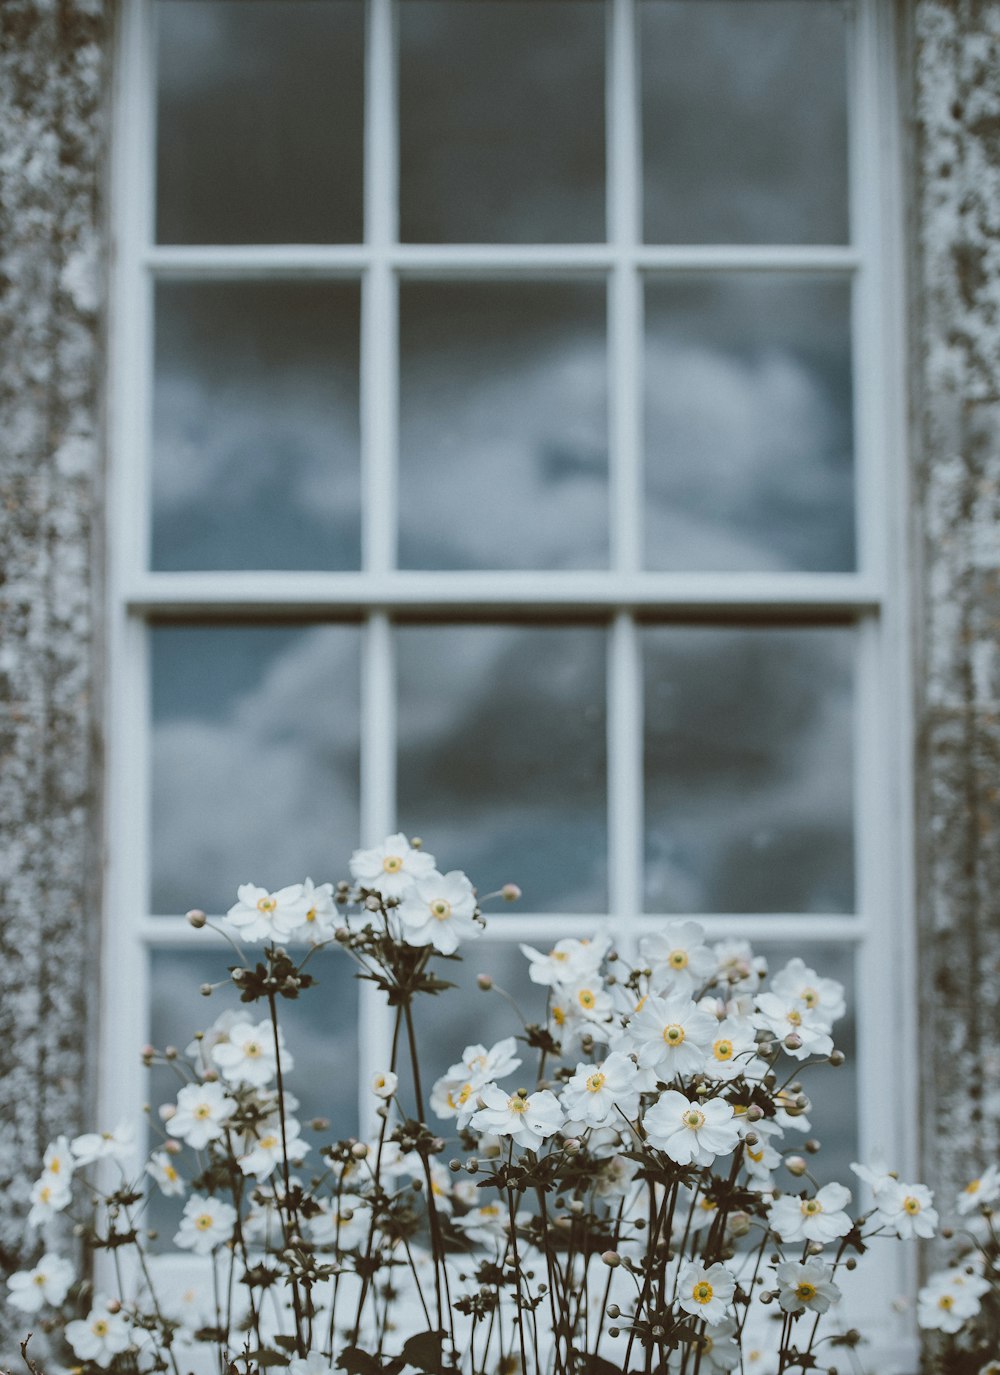 Flores blancas en foco superficial